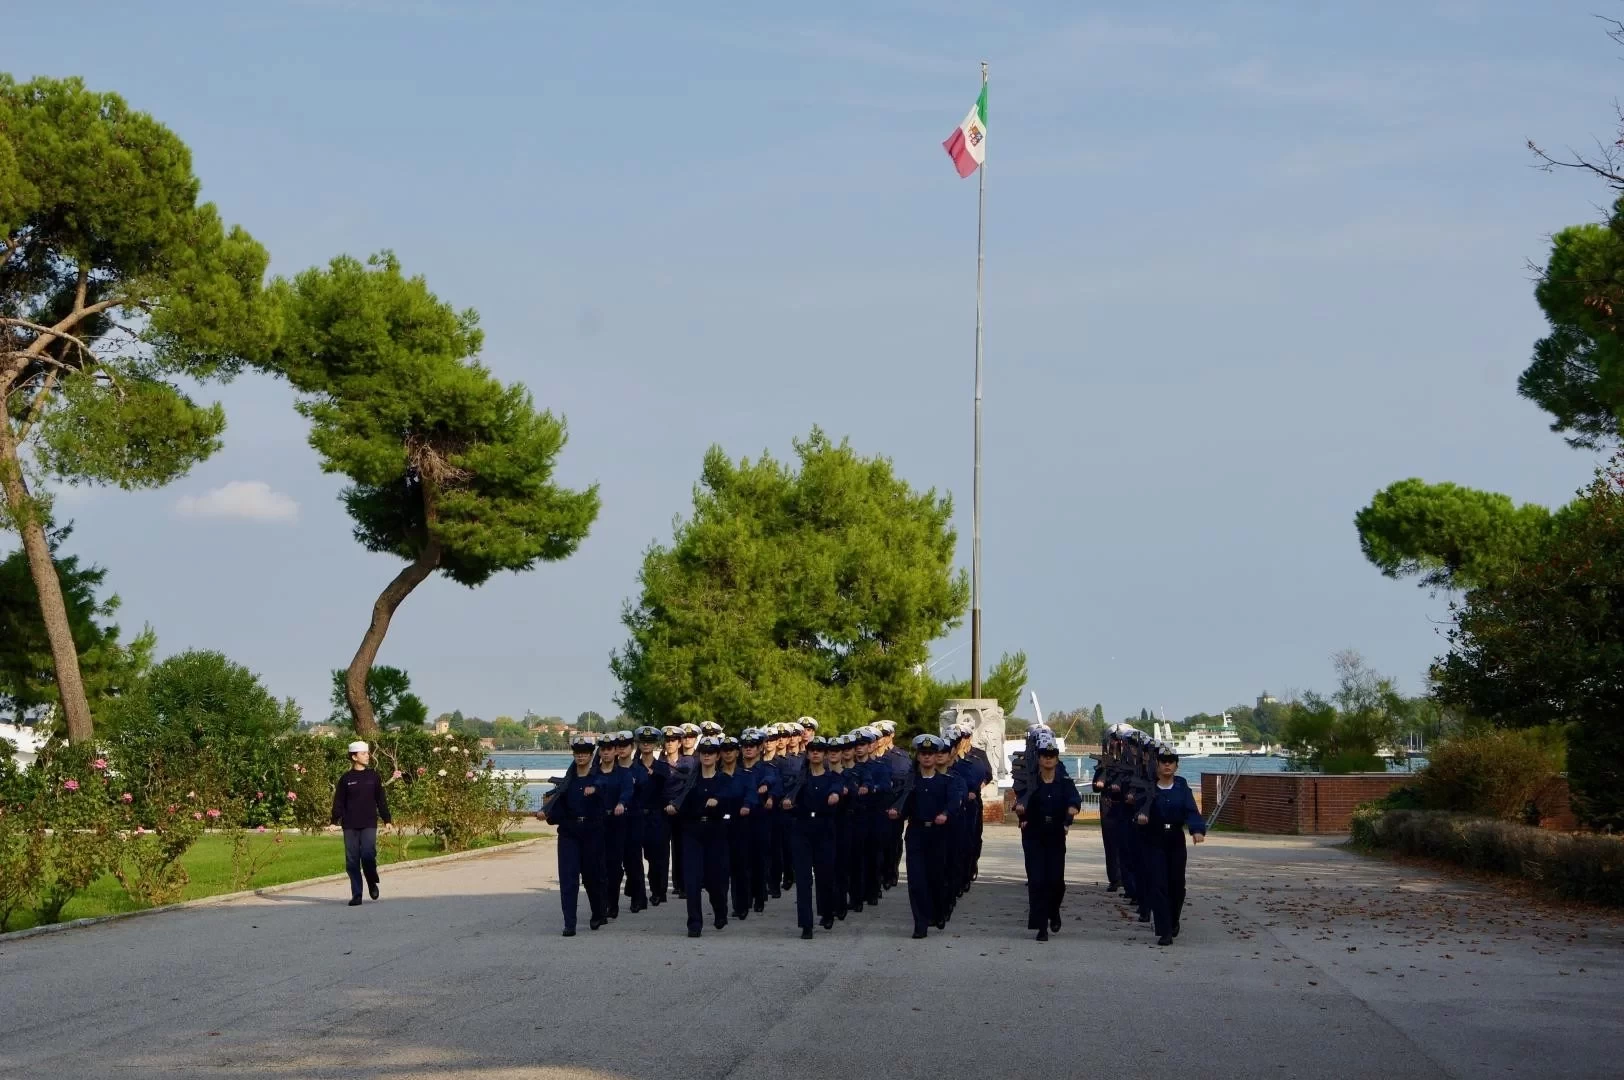 Concorsi: Pubblicato il bando per la scuola Navale Militare Morosini